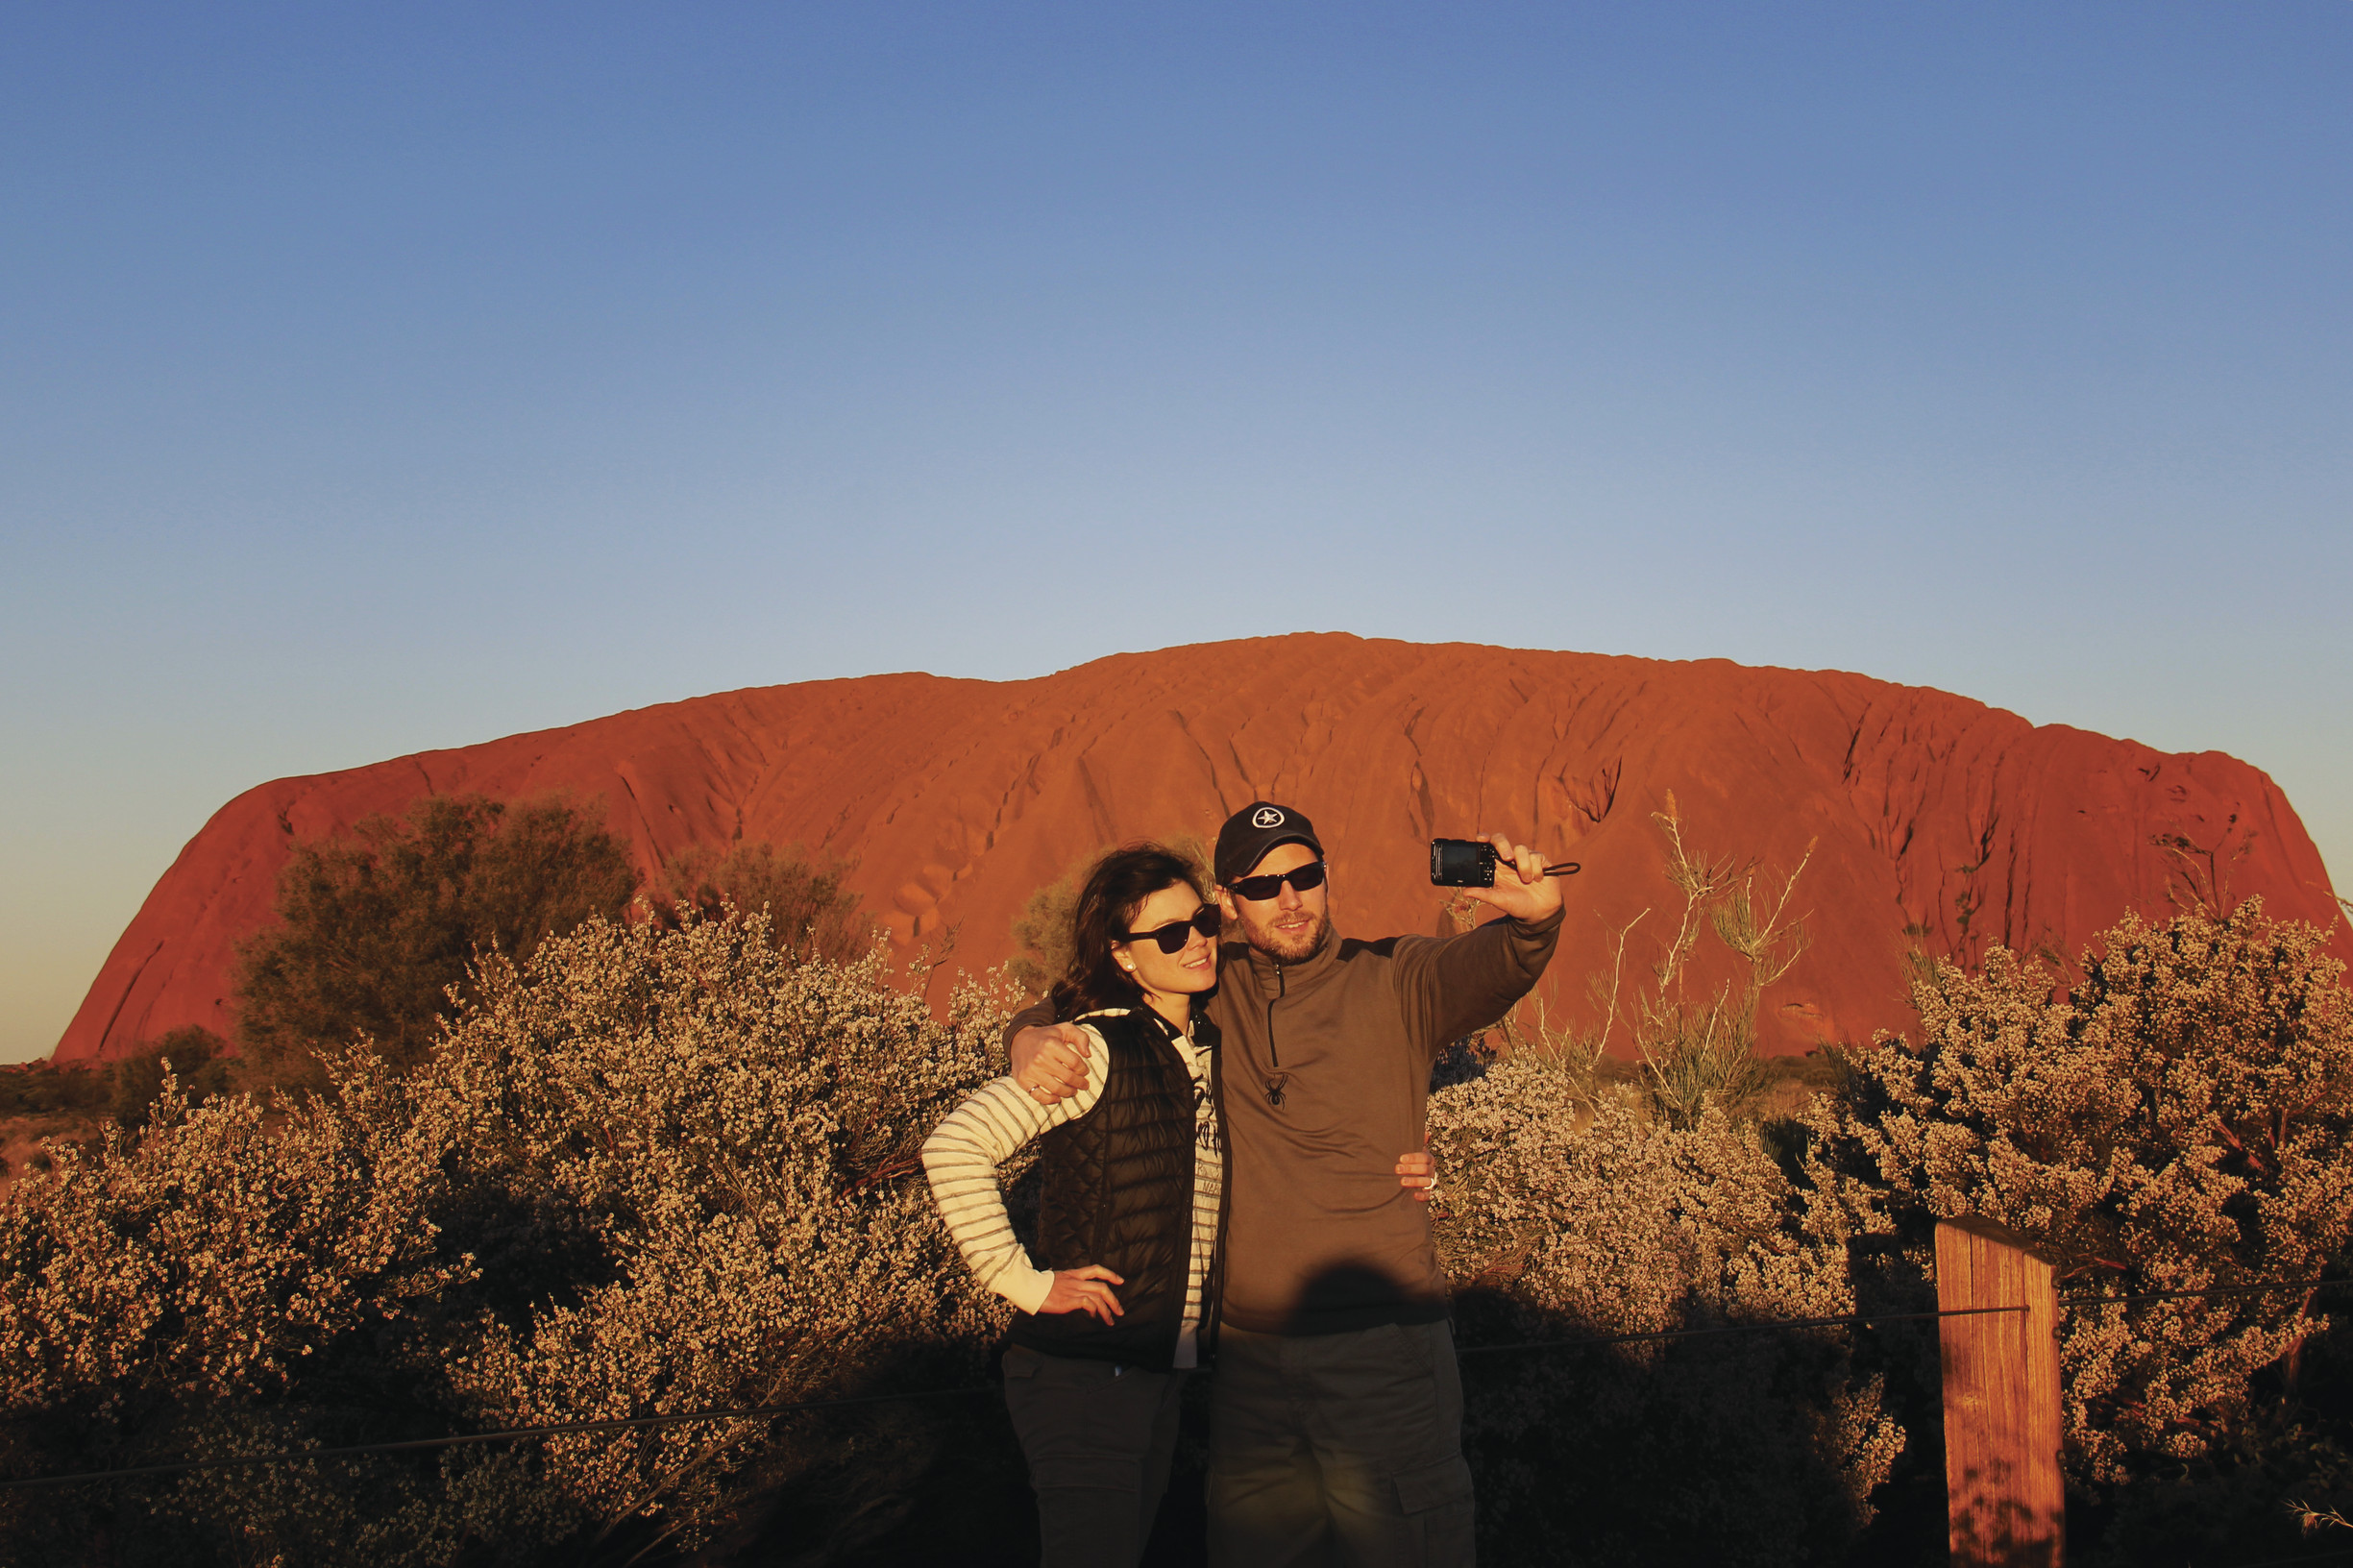 Uluru sunset (Ayers Rock) credit Sarena Hyland/Tourism NT